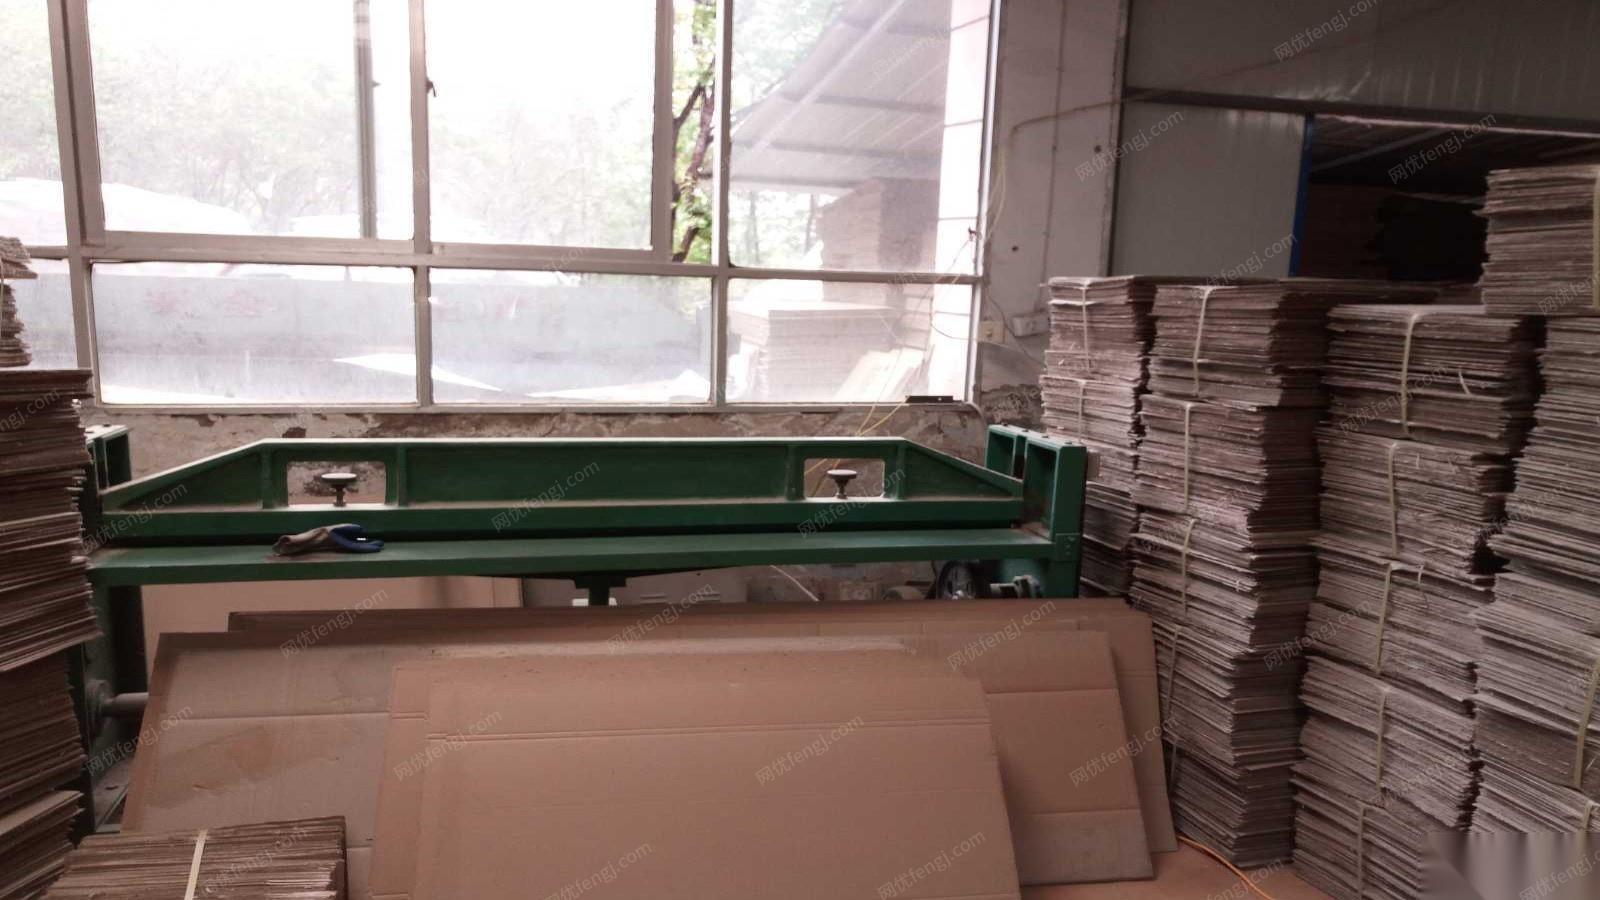 纸箱生产线包括三色印刷机、碰线机、订箱机等转让